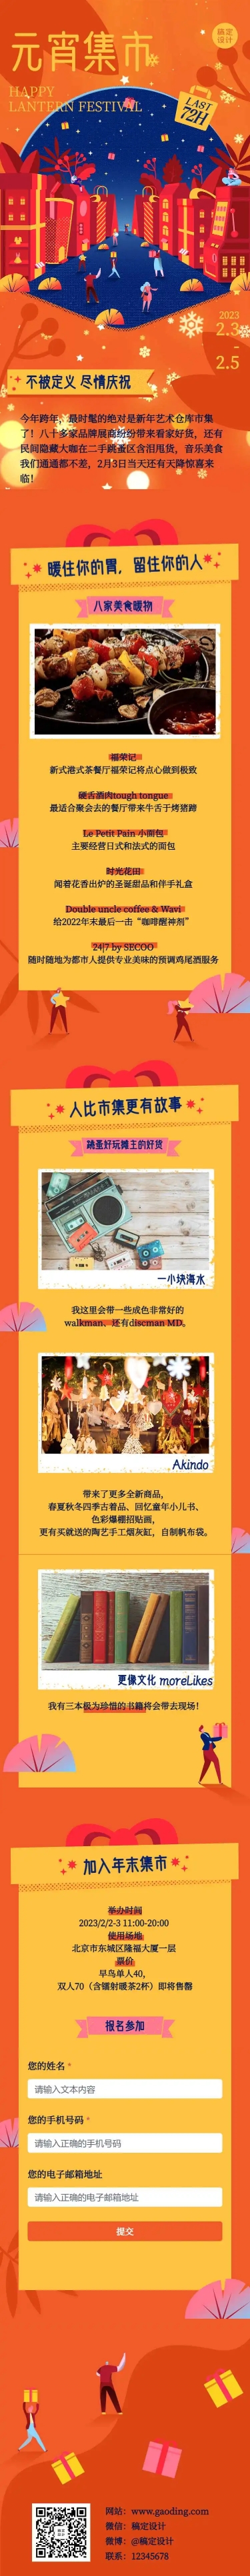 H5长页文艺新年集市促销周年庆年货开业活动